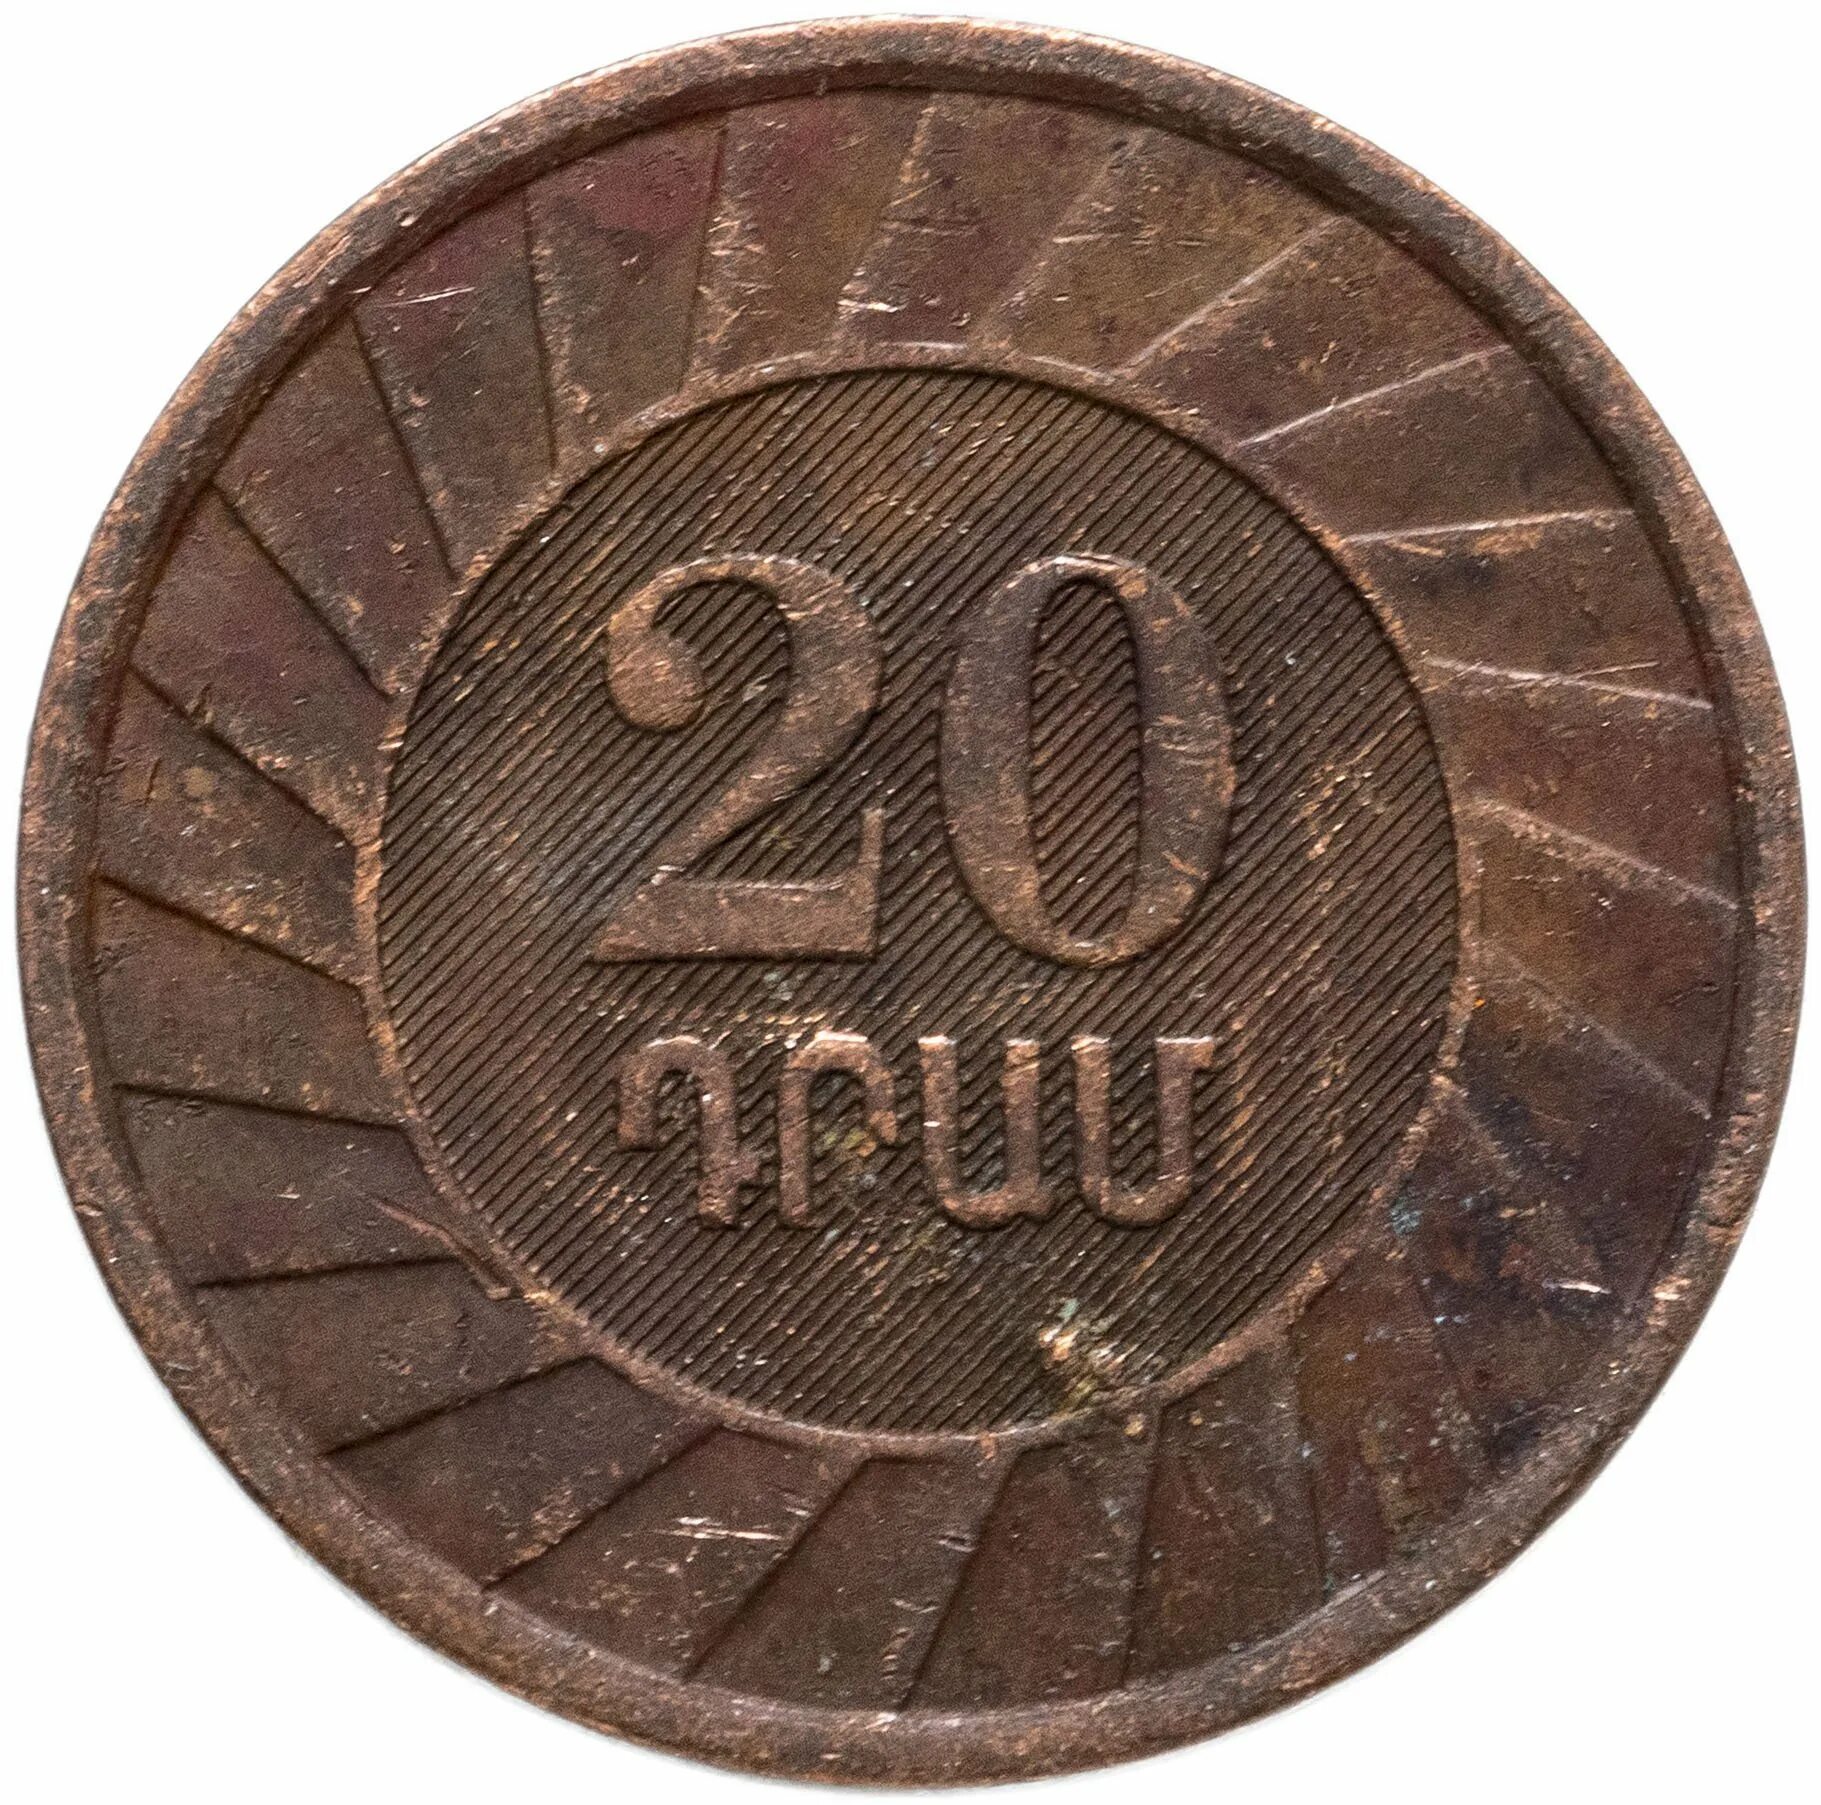 20 Драмов 2003 Армения. Монета 20 драм 2003. Армянская монета 20 драм. Монета номиналом 20 драмов 2003 год. 2500 драм в рублях